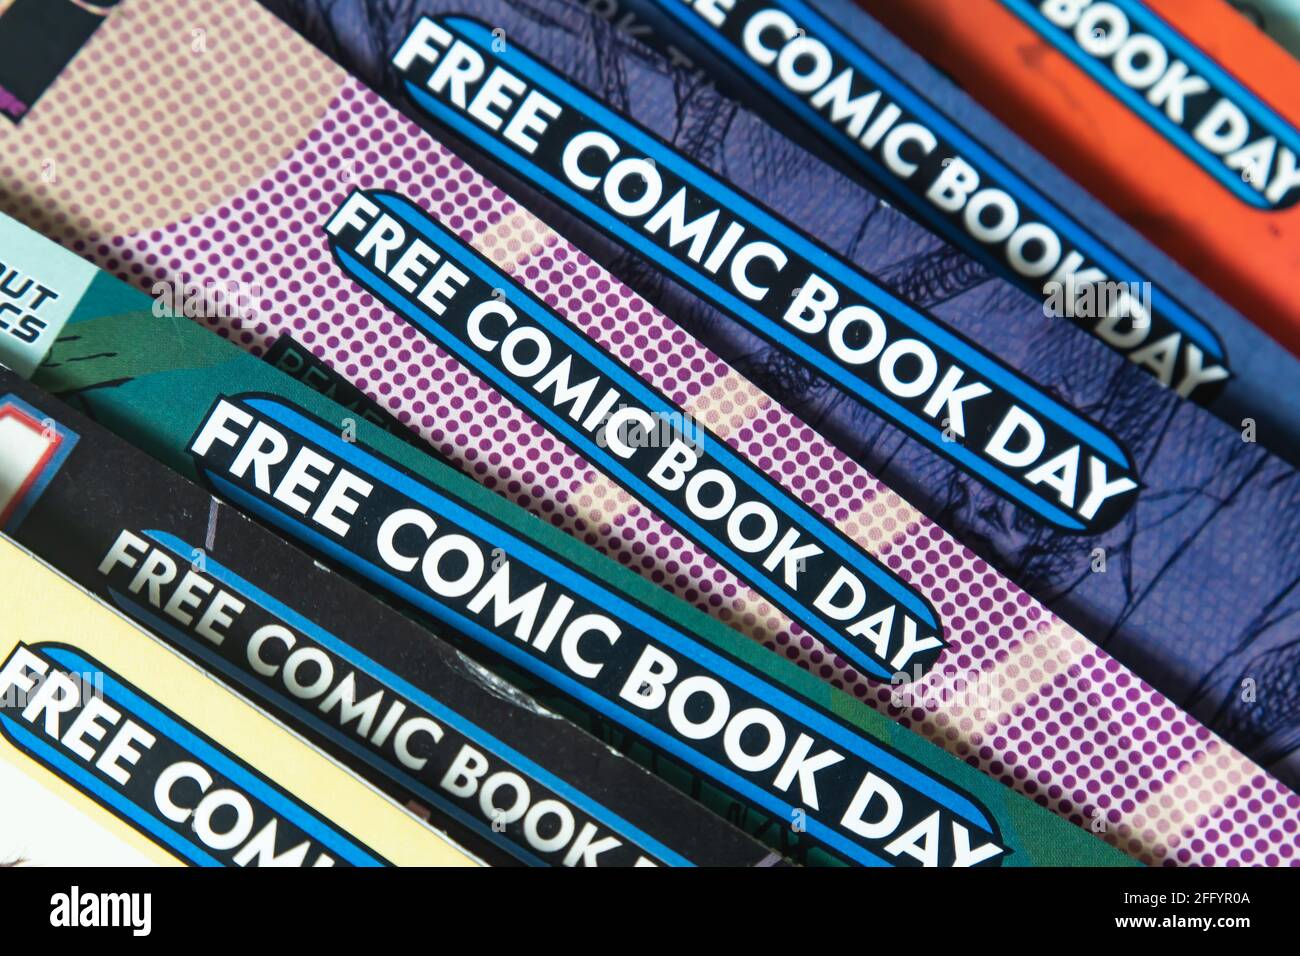 Bangkok, Thailand - 24. April 2021 : traditionell findet der Free Comic Book Day am ersten Samstag im Mai statt. Stockfoto